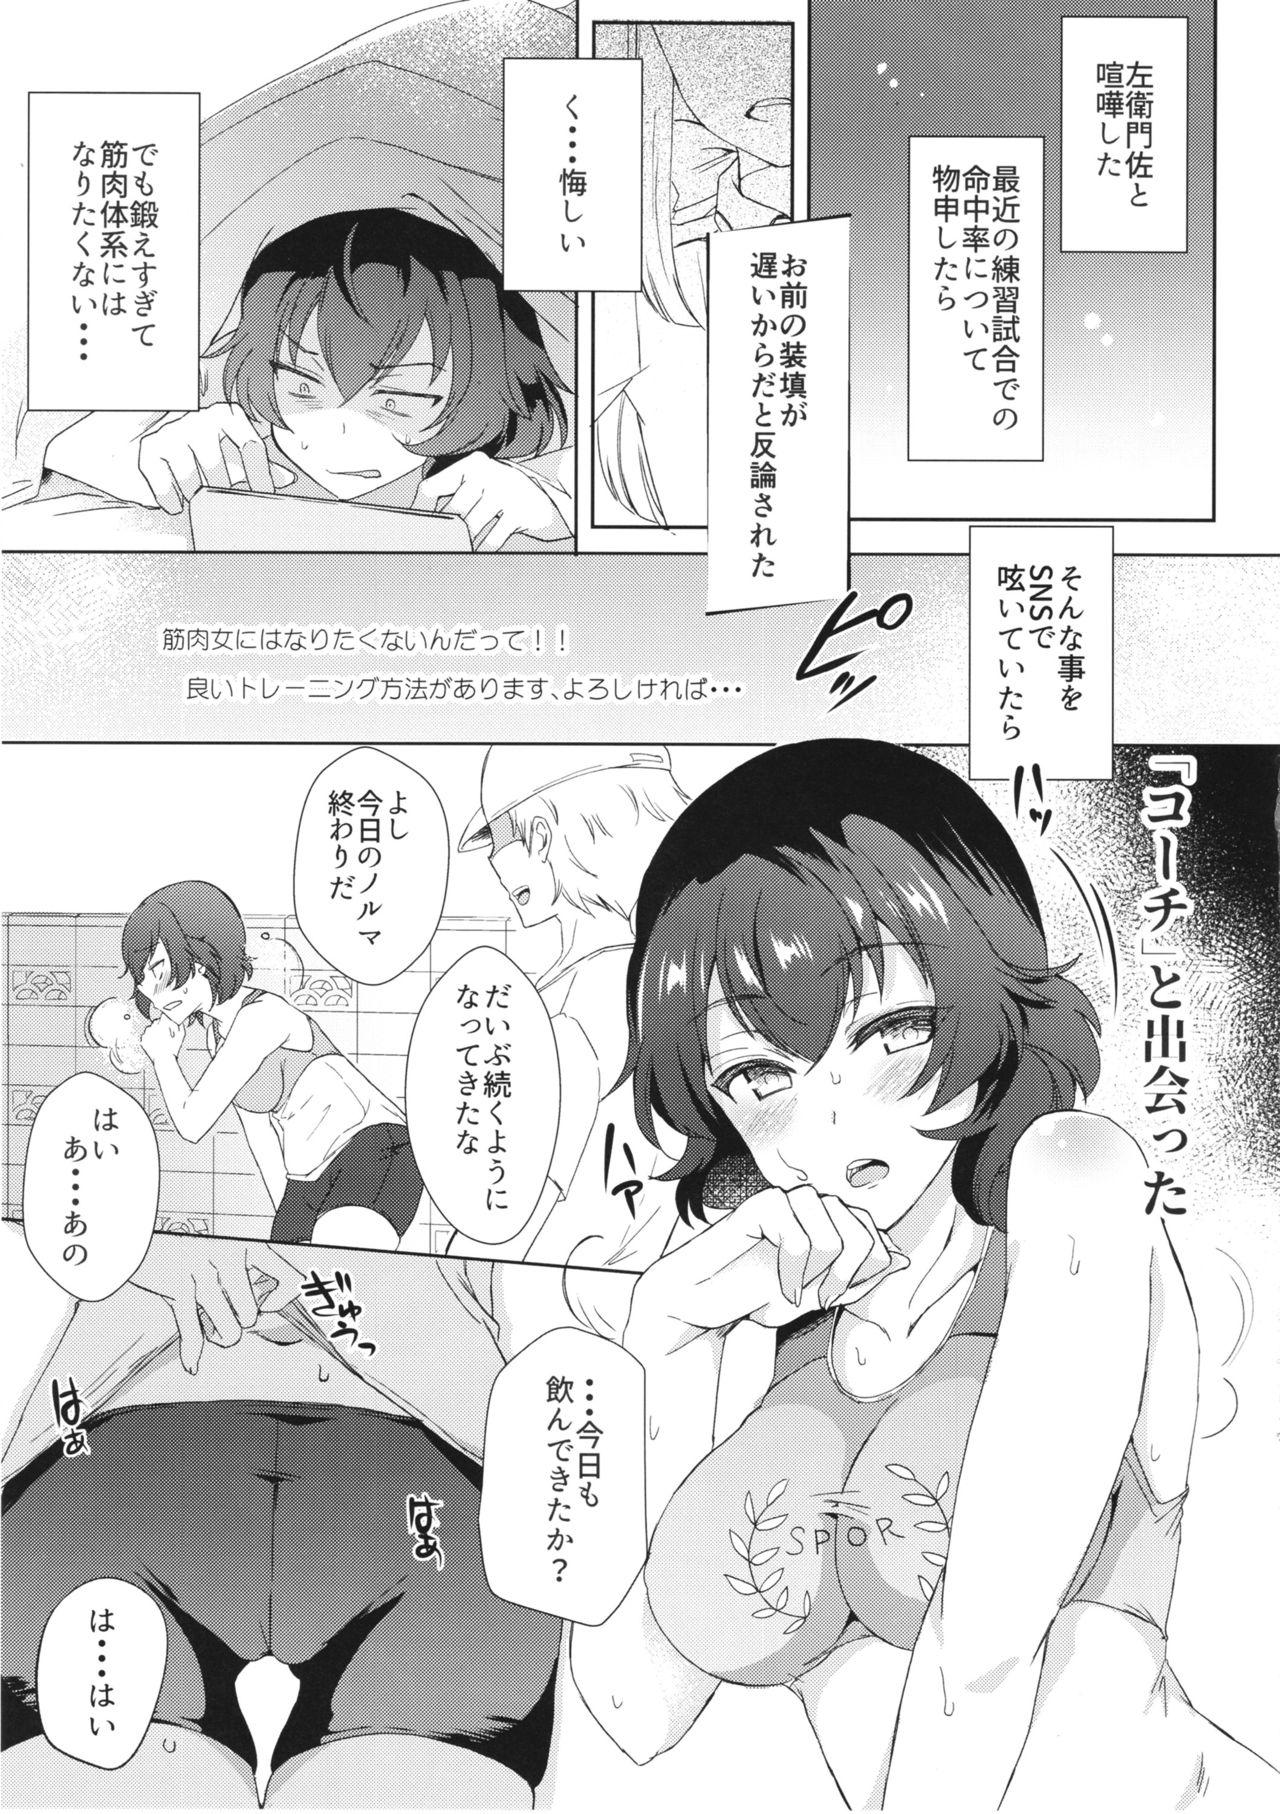 Oral Sex Himitsu o Mamoru wa Otona no Tsutome - Girls und panzer Huge - Page 8